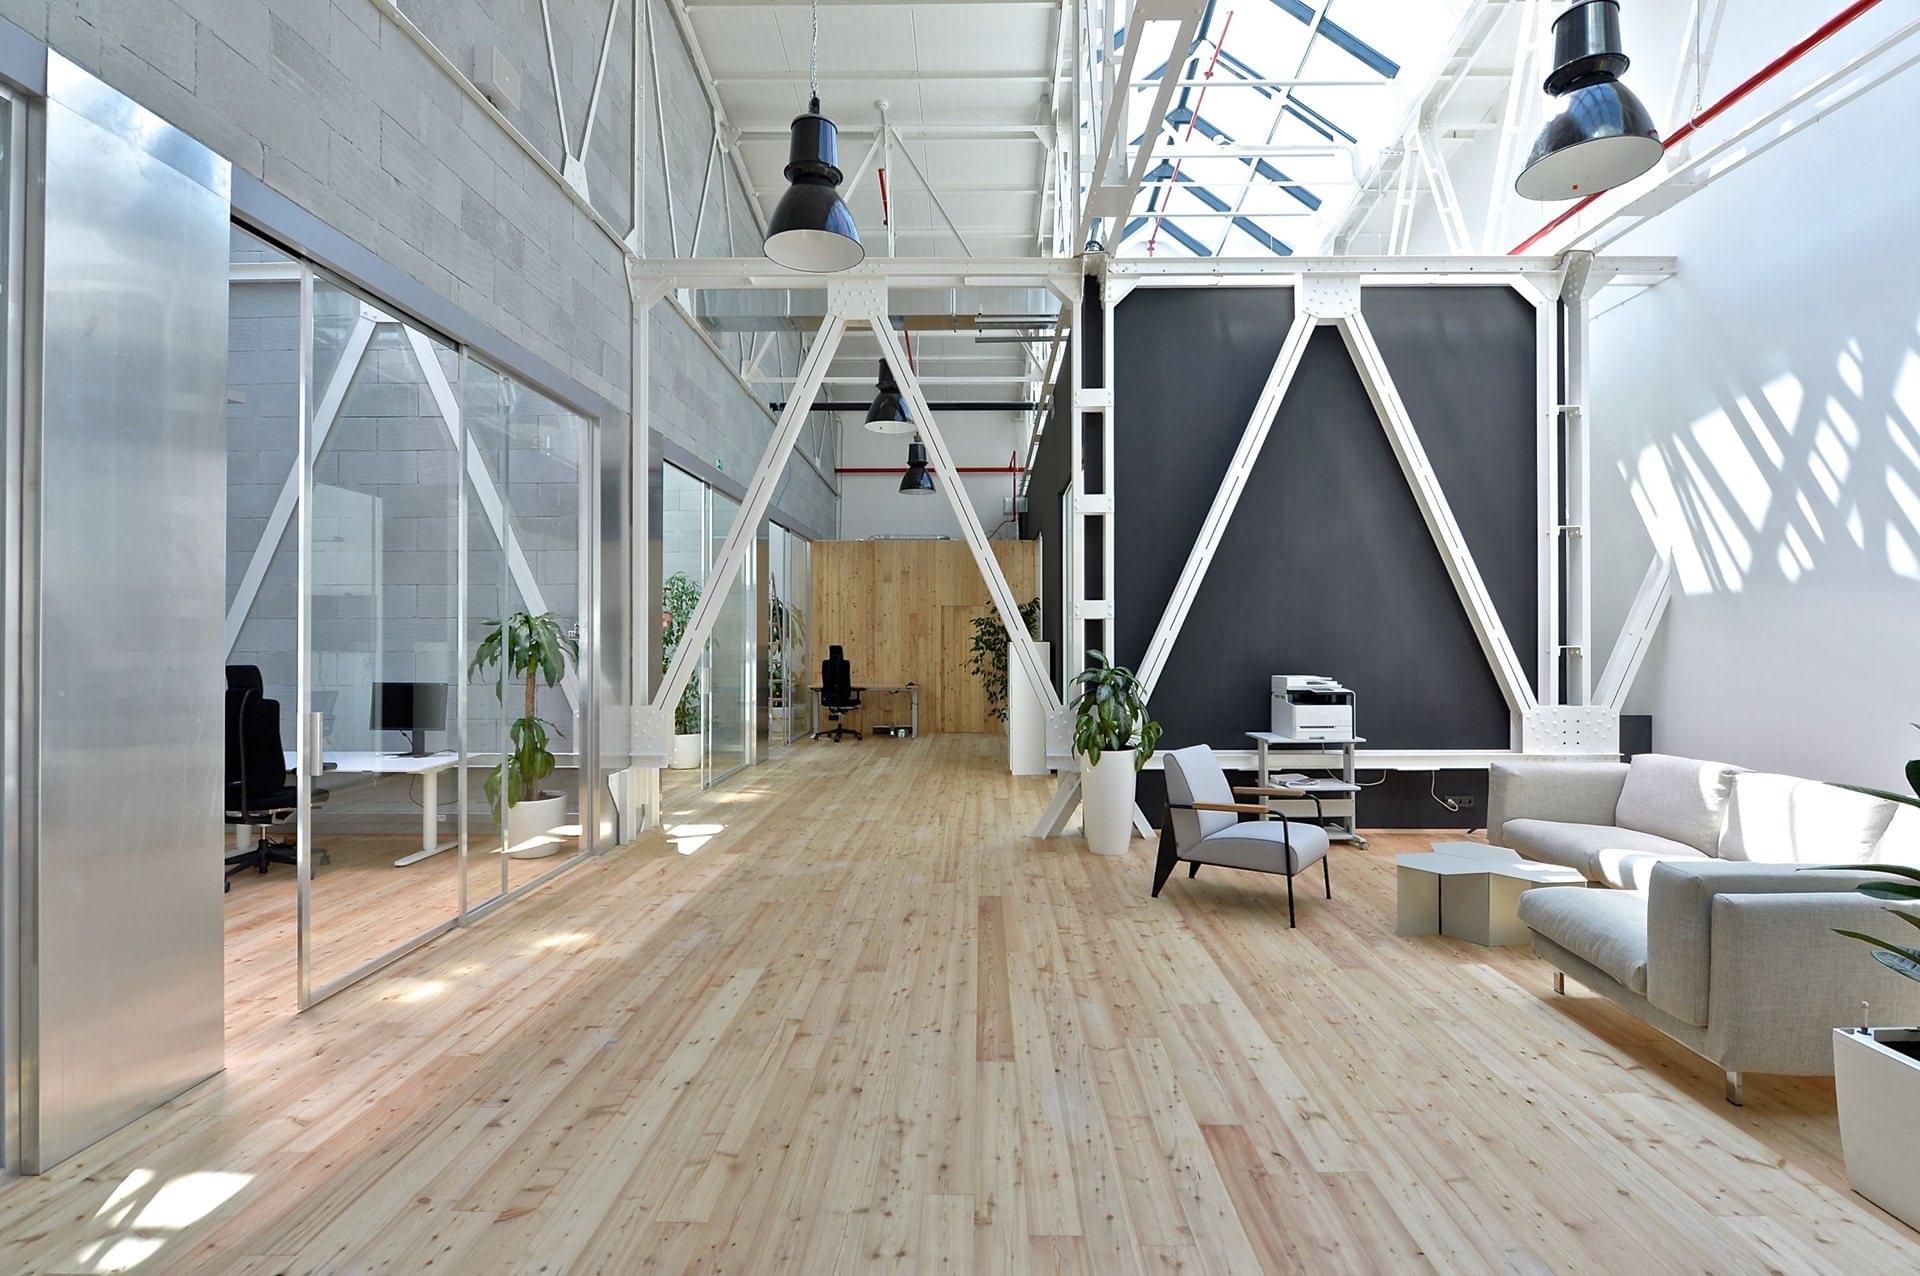 Prostorná místnost s vysokým stropem a moderním interiérem je vhodně doplněná o minimalistické prvky ve světlých barvách, které jsou skvěle sladěny se světlou dřevěnou podlahou. 